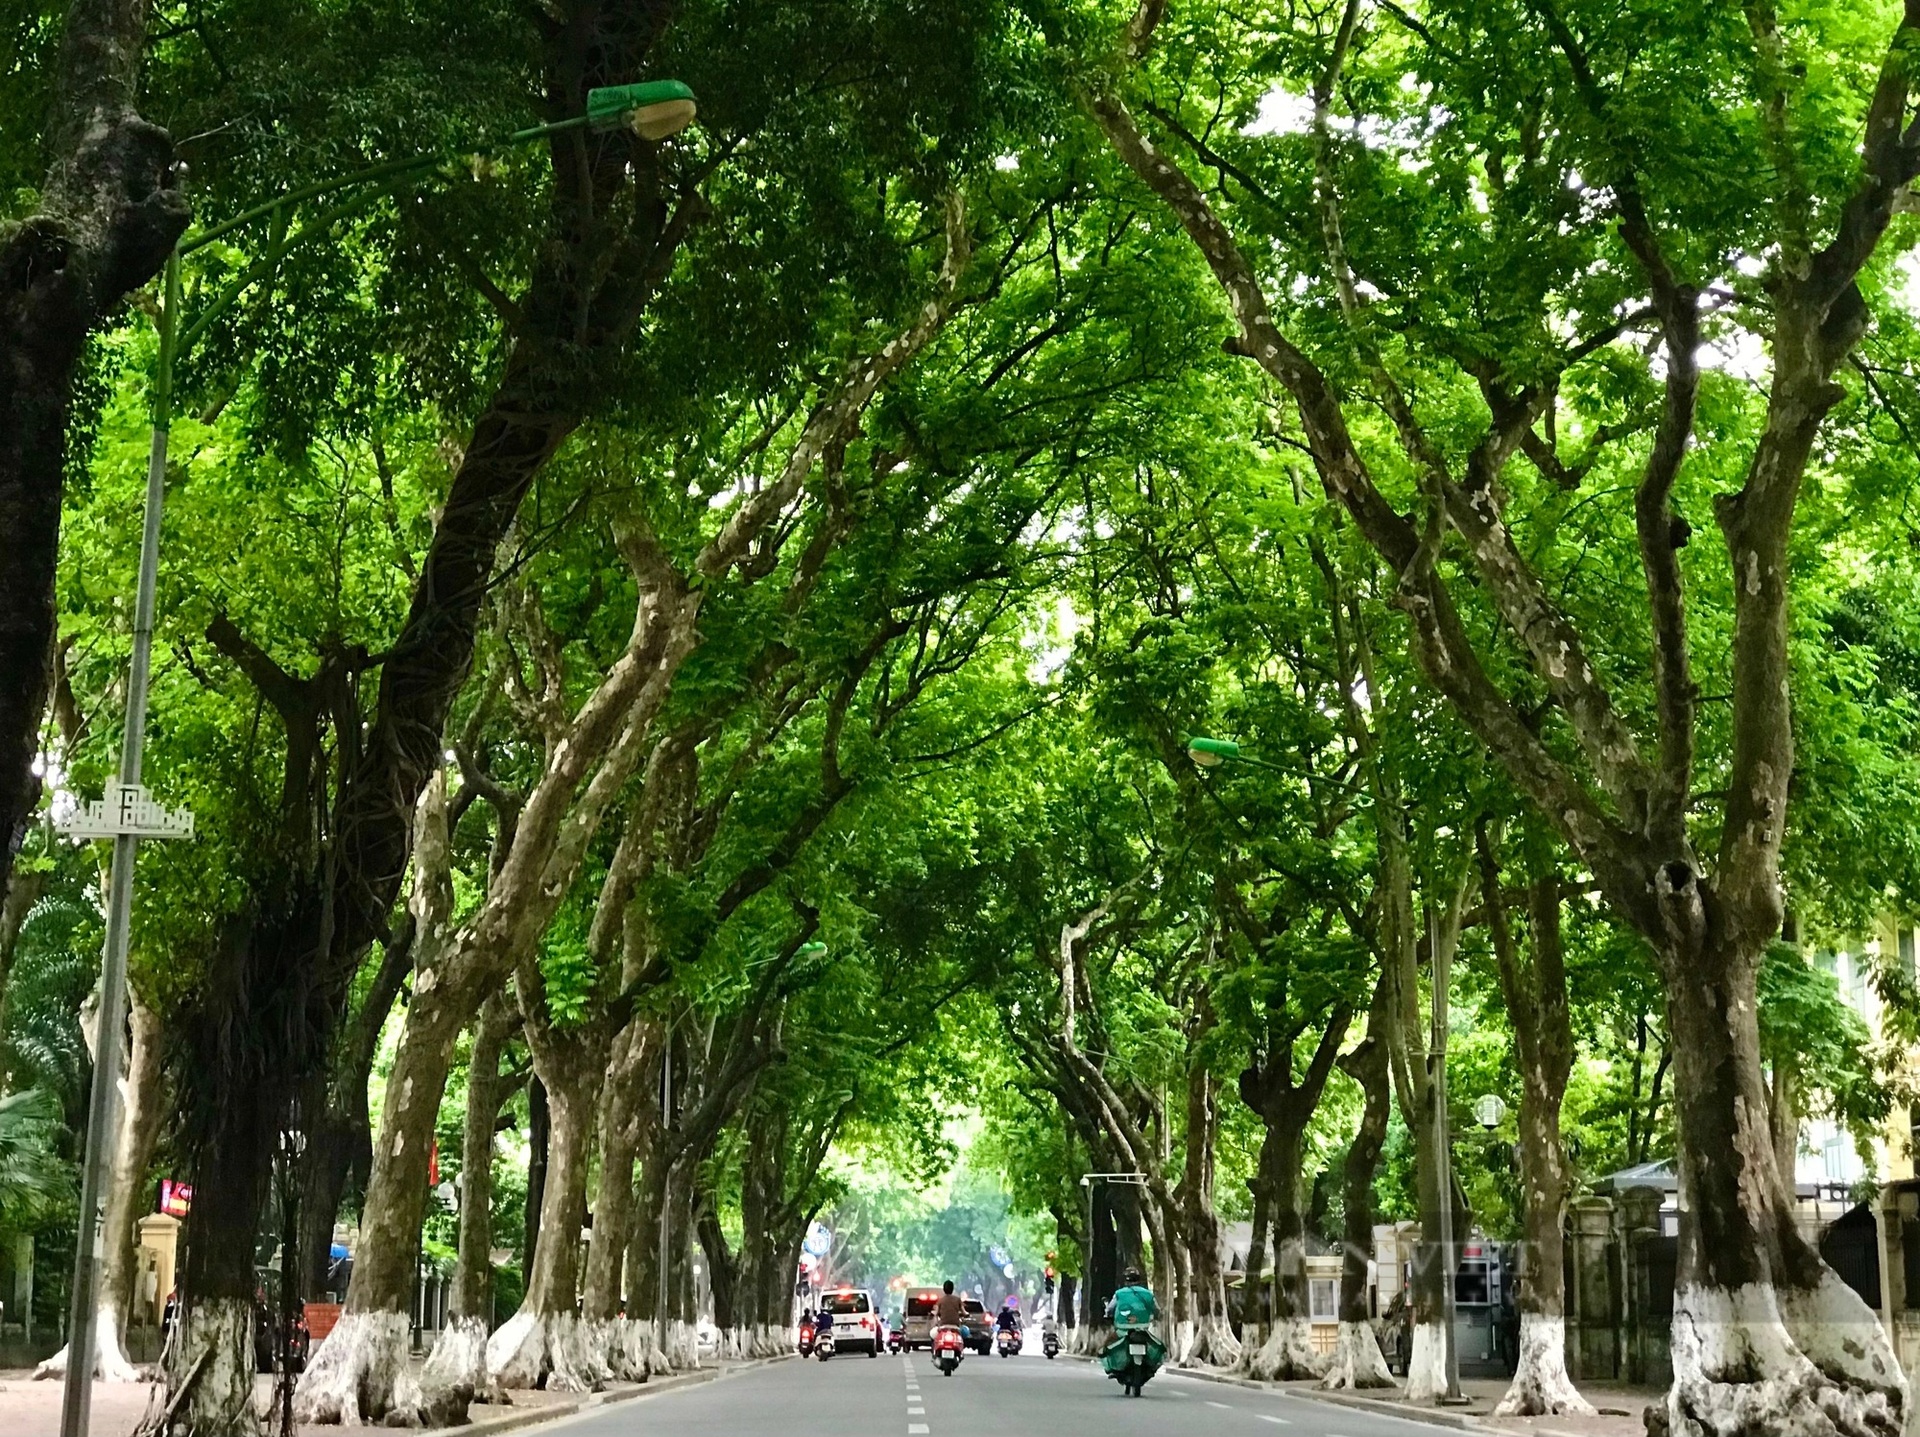 Lần đầu ghé thăm phố Phan Đình Phùng, ai nấy đều choáng ngợp trước hình ảnh của ba hàng cây sấu đã hơn trăm tuổi nằm song song, vững chãi hai bên hè đường (Ảnh: Dân Việt)